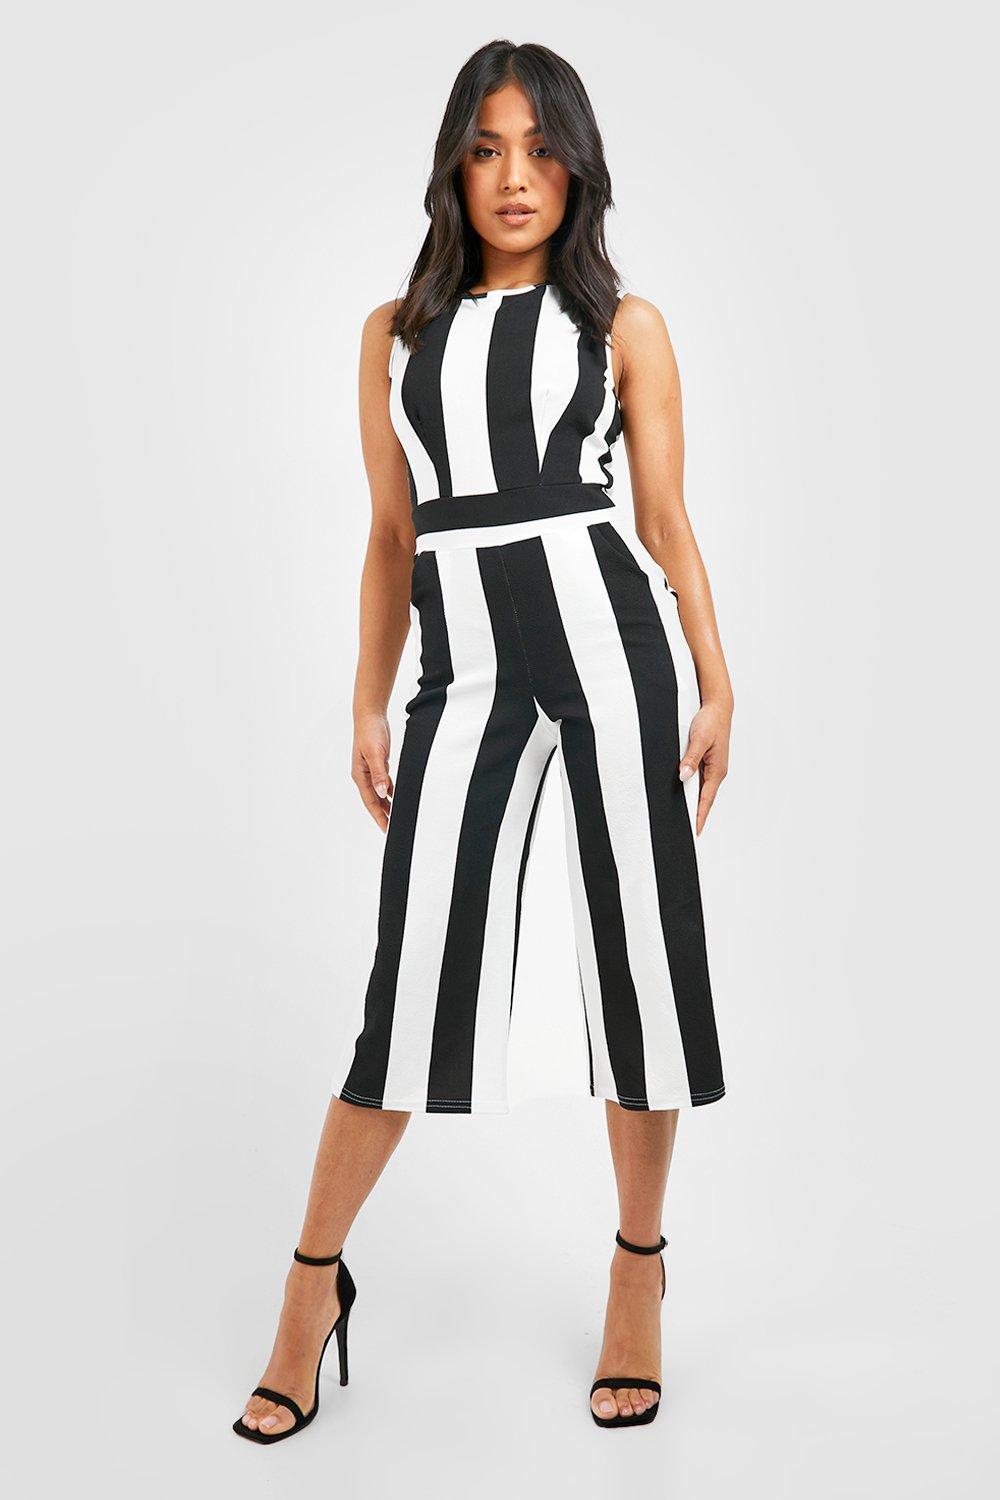 striped romper dress